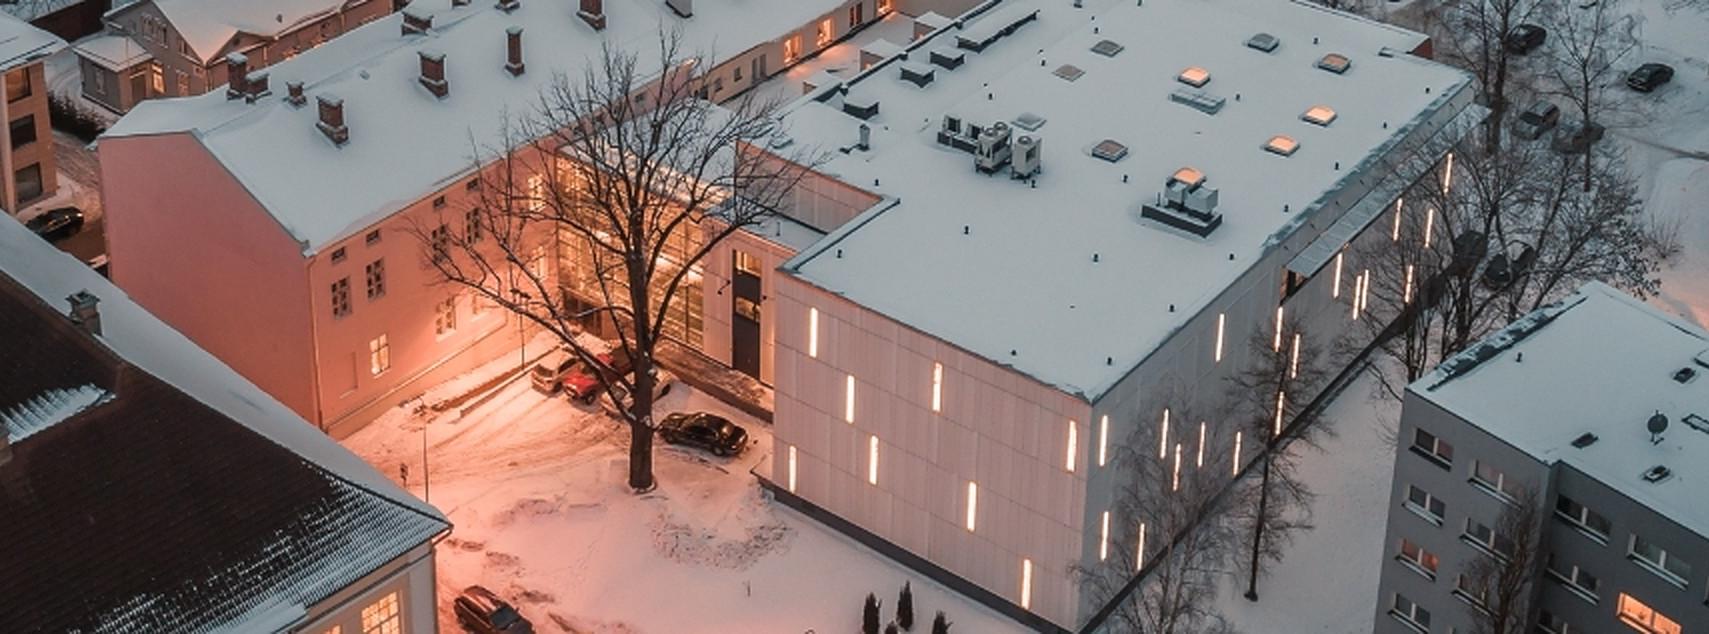 Fotol on droonifoto kirjandusmuuseumi hoone  tagaküljest ülalt. Katused on kaetud õhukese valge lumekihiga. Foto toon on roosakas ja helehall. Akendes tuled põlevad, sest on juba veidi hämar.